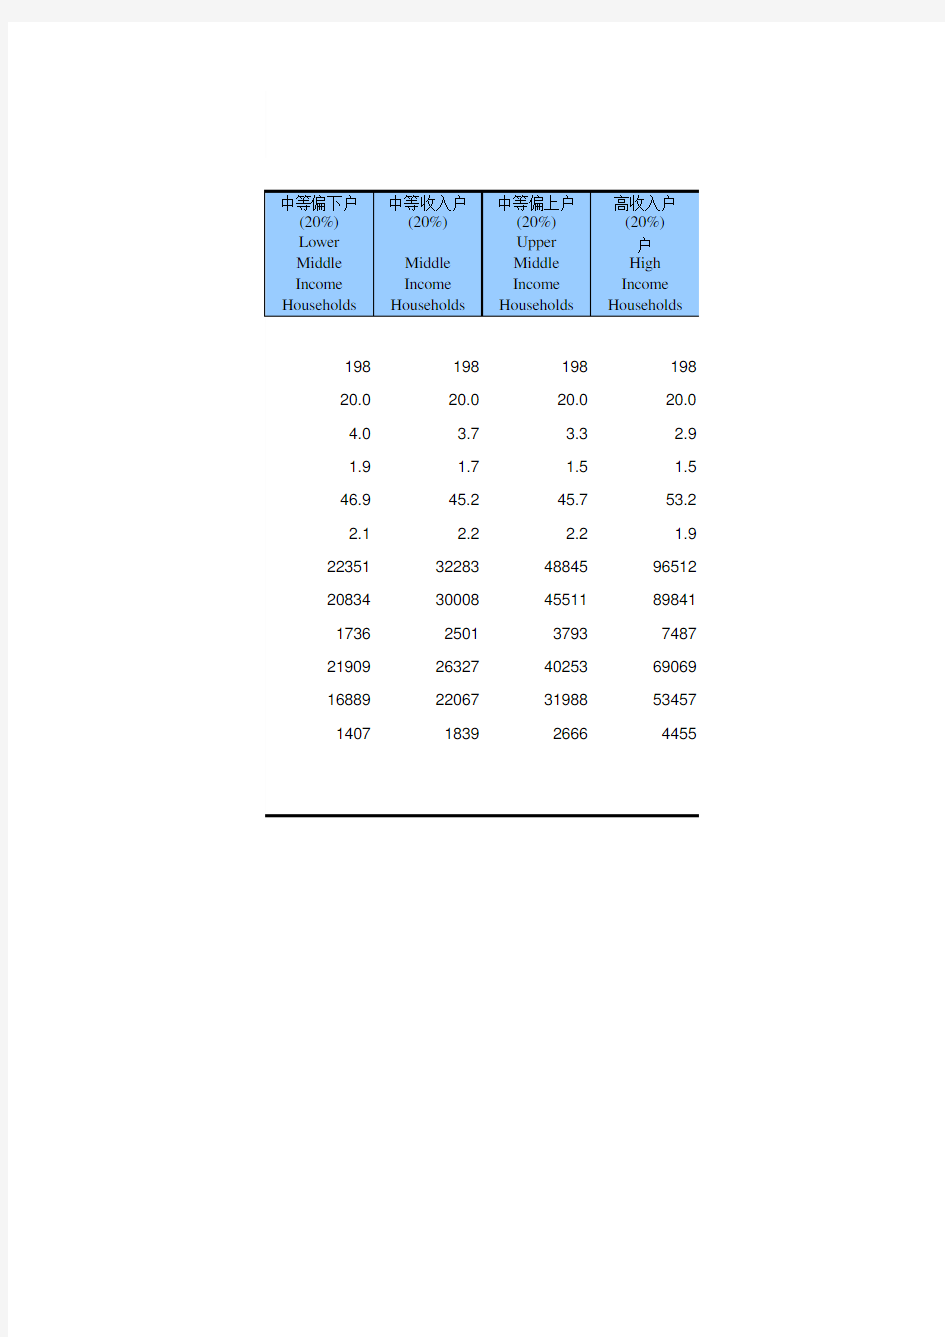 海南省统计年鉴2020社会经济发展指标：城镇居民家庭基本情况(按高中低收入分2019)